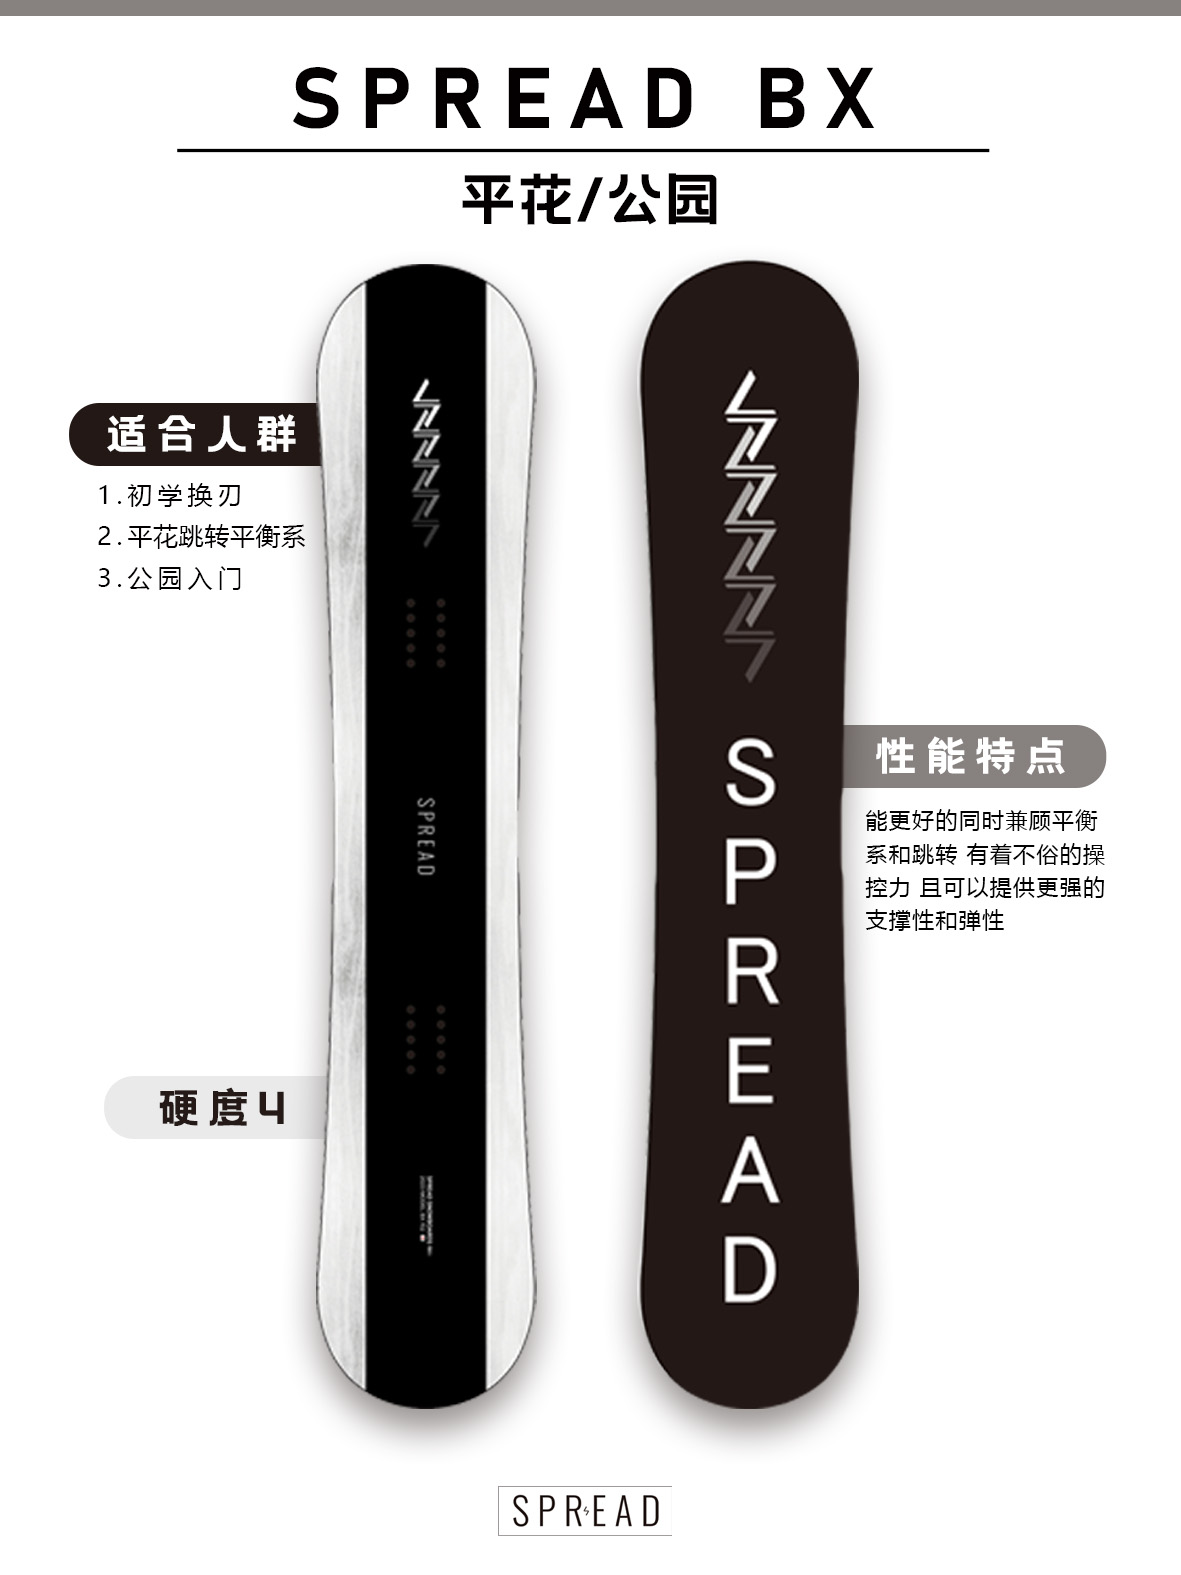 24新款SPREAD日本进口男款平花板LTB全能滑雪板BX - 图1